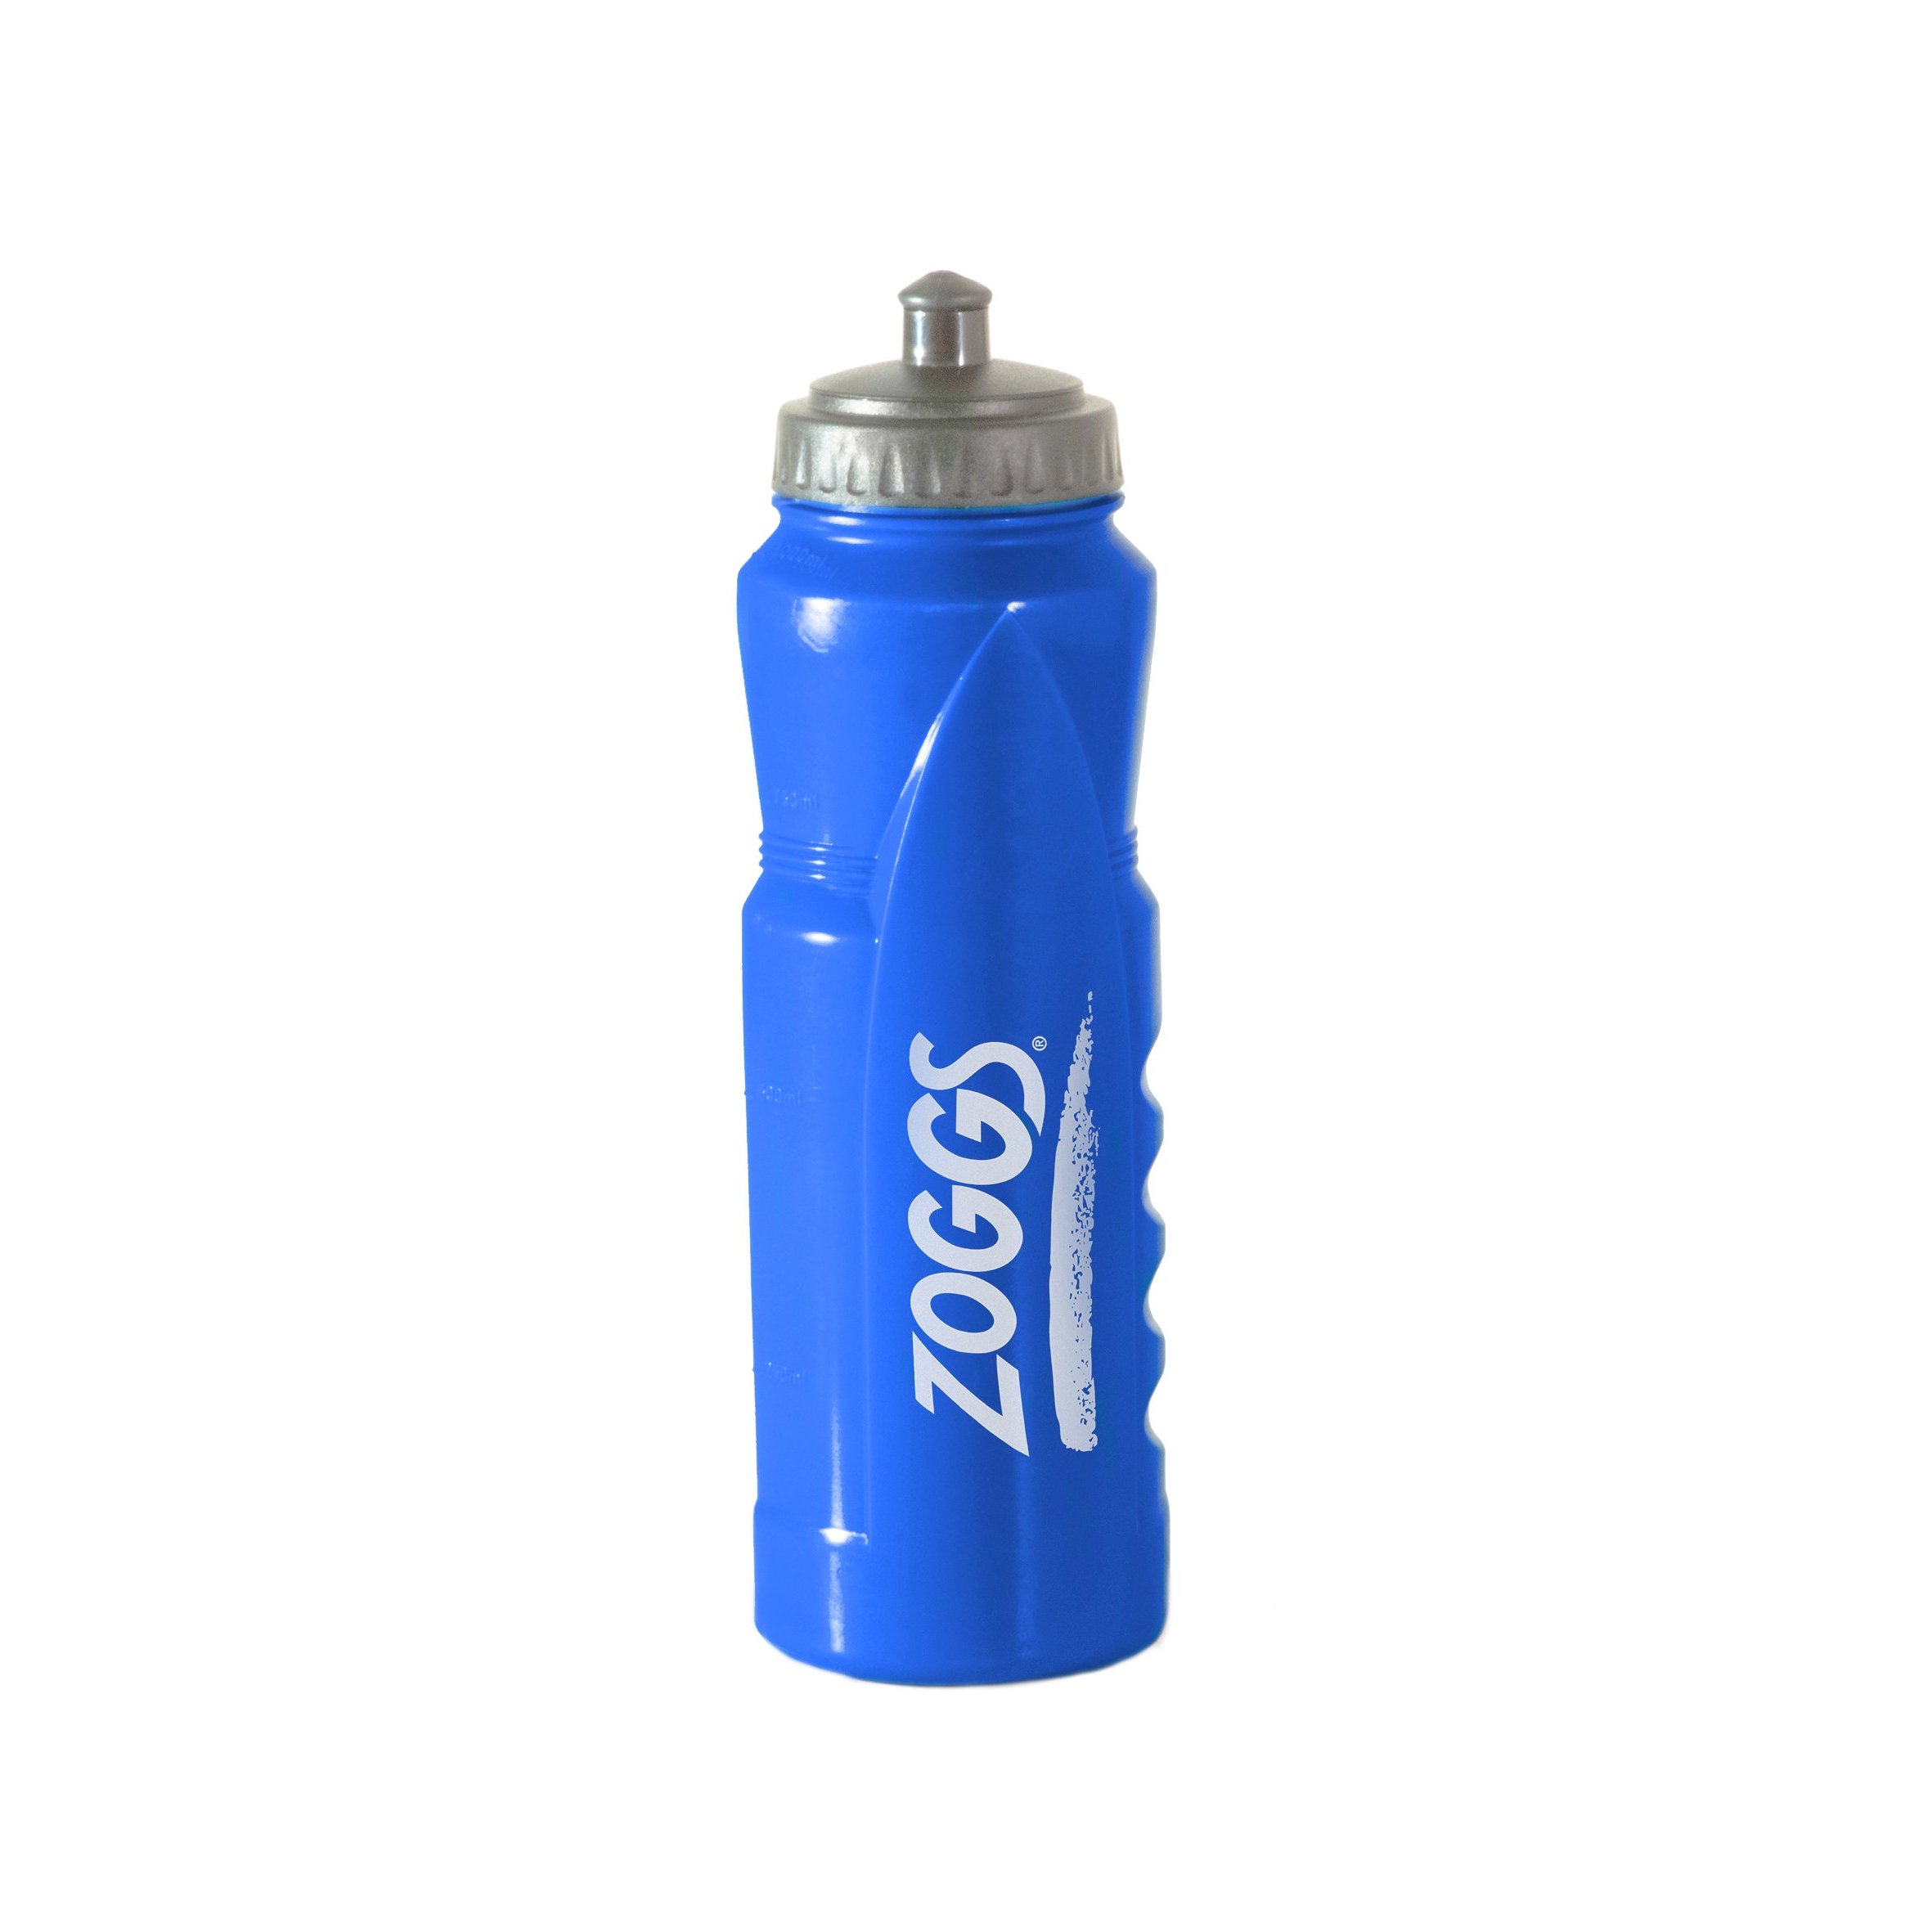 Zoggs Sports Aqua Bottle, Blue, 1 Litre